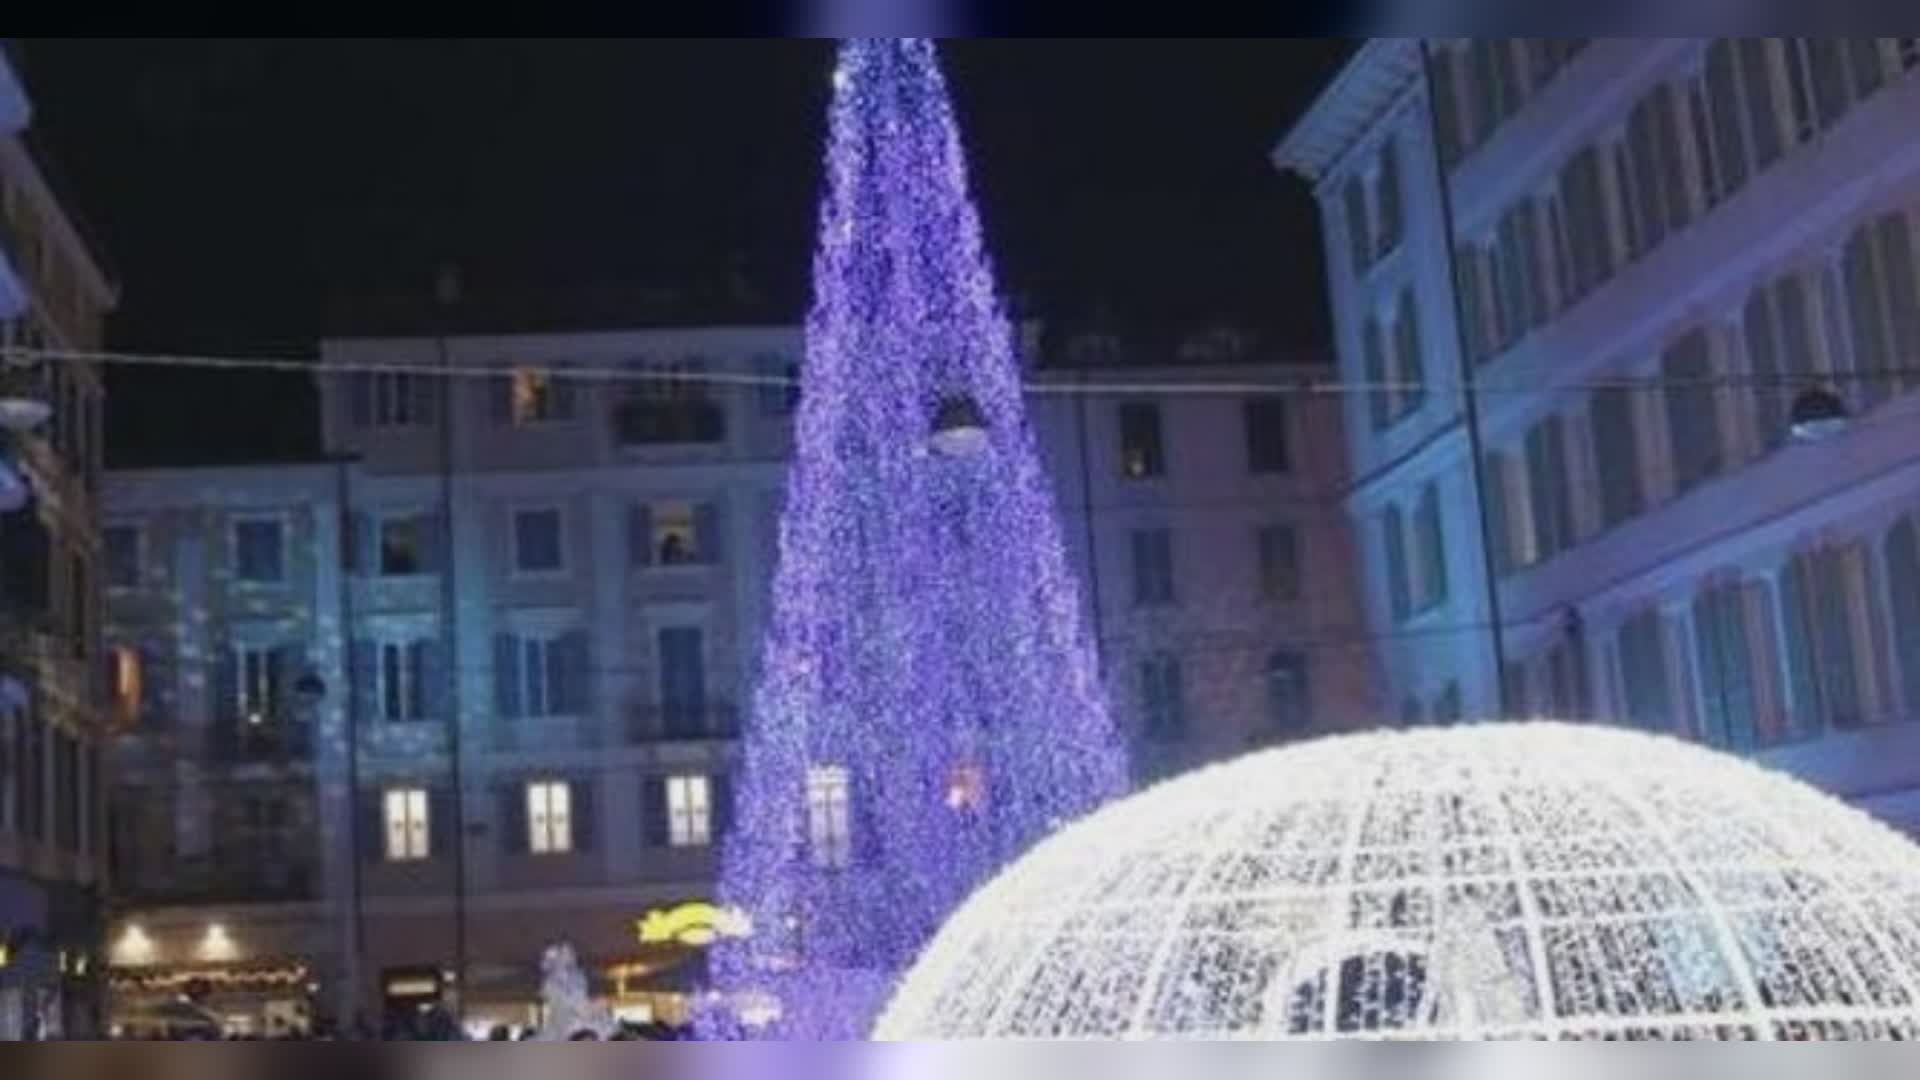 Sanremo, il sindaco Biancheri accende l'albero di Natale insieme a Cristina D'Avena: "Grazie a lei per essere stata con noi nonostante gli impegni"